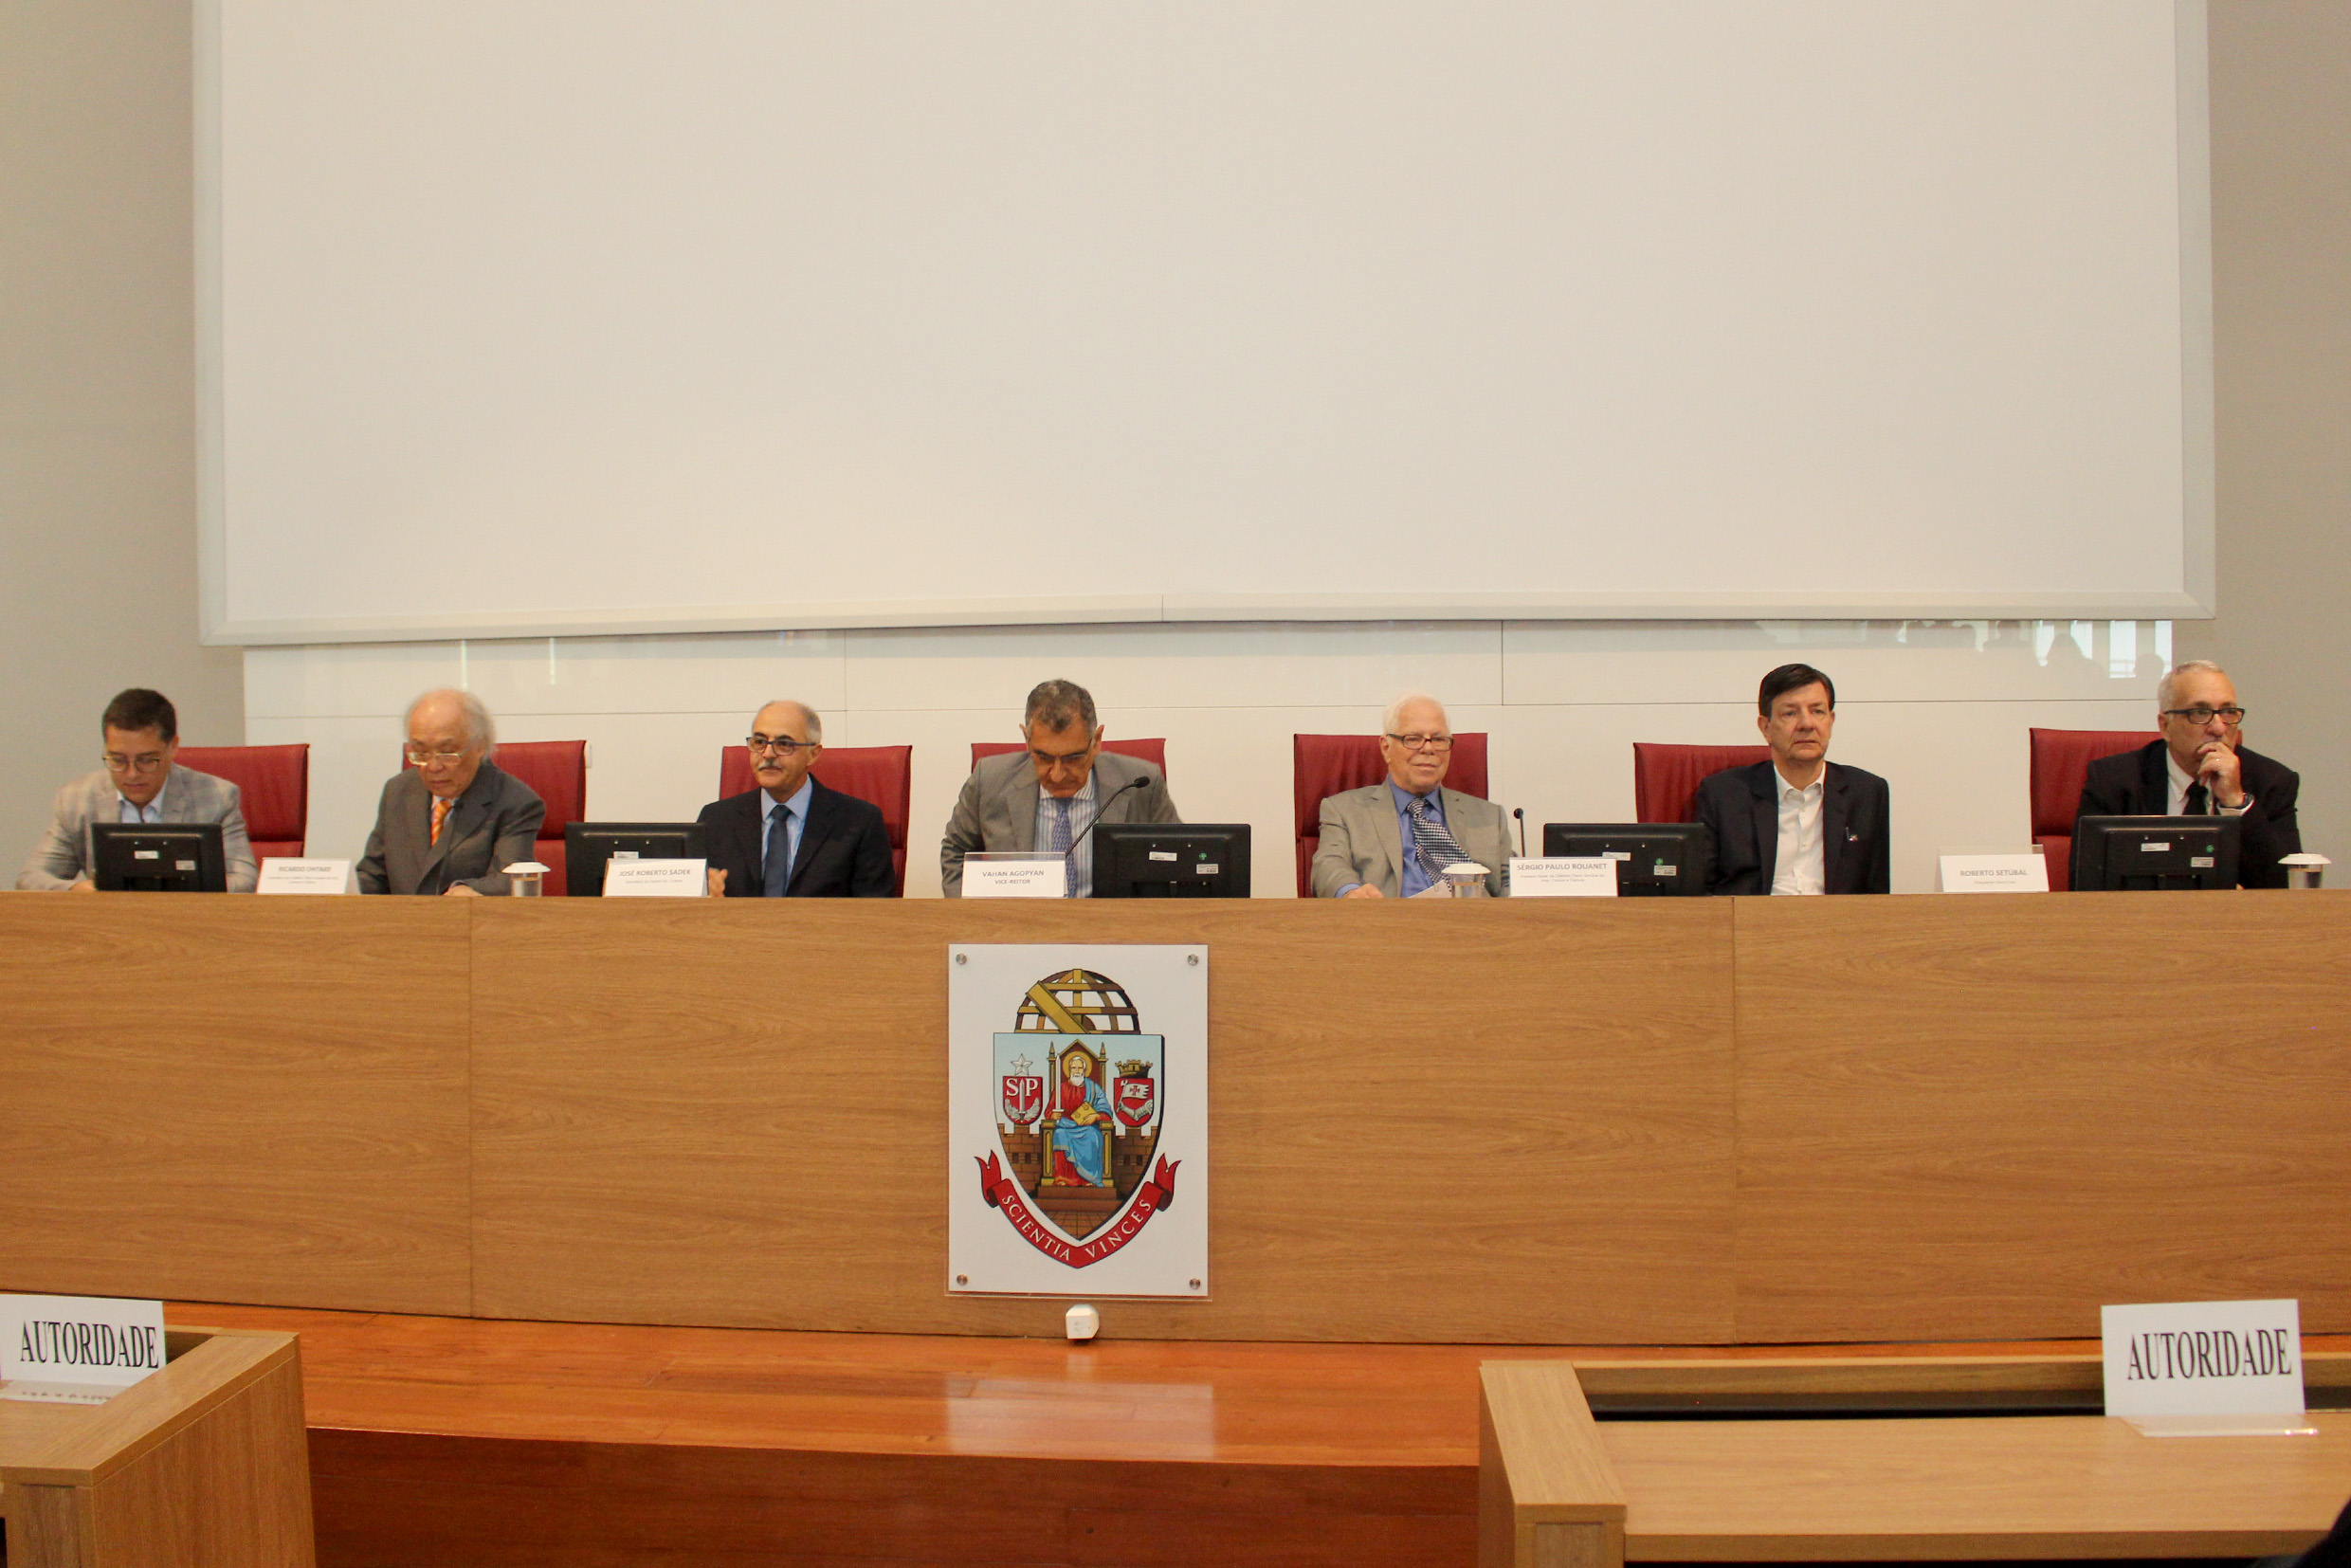 Eduardo Saron, Ricardo Ohtake, José Roberto Sadek, Vahan Agopyan, Sergio Paulo Rouanet, Roberto Setúbal and Paulo Saldiva